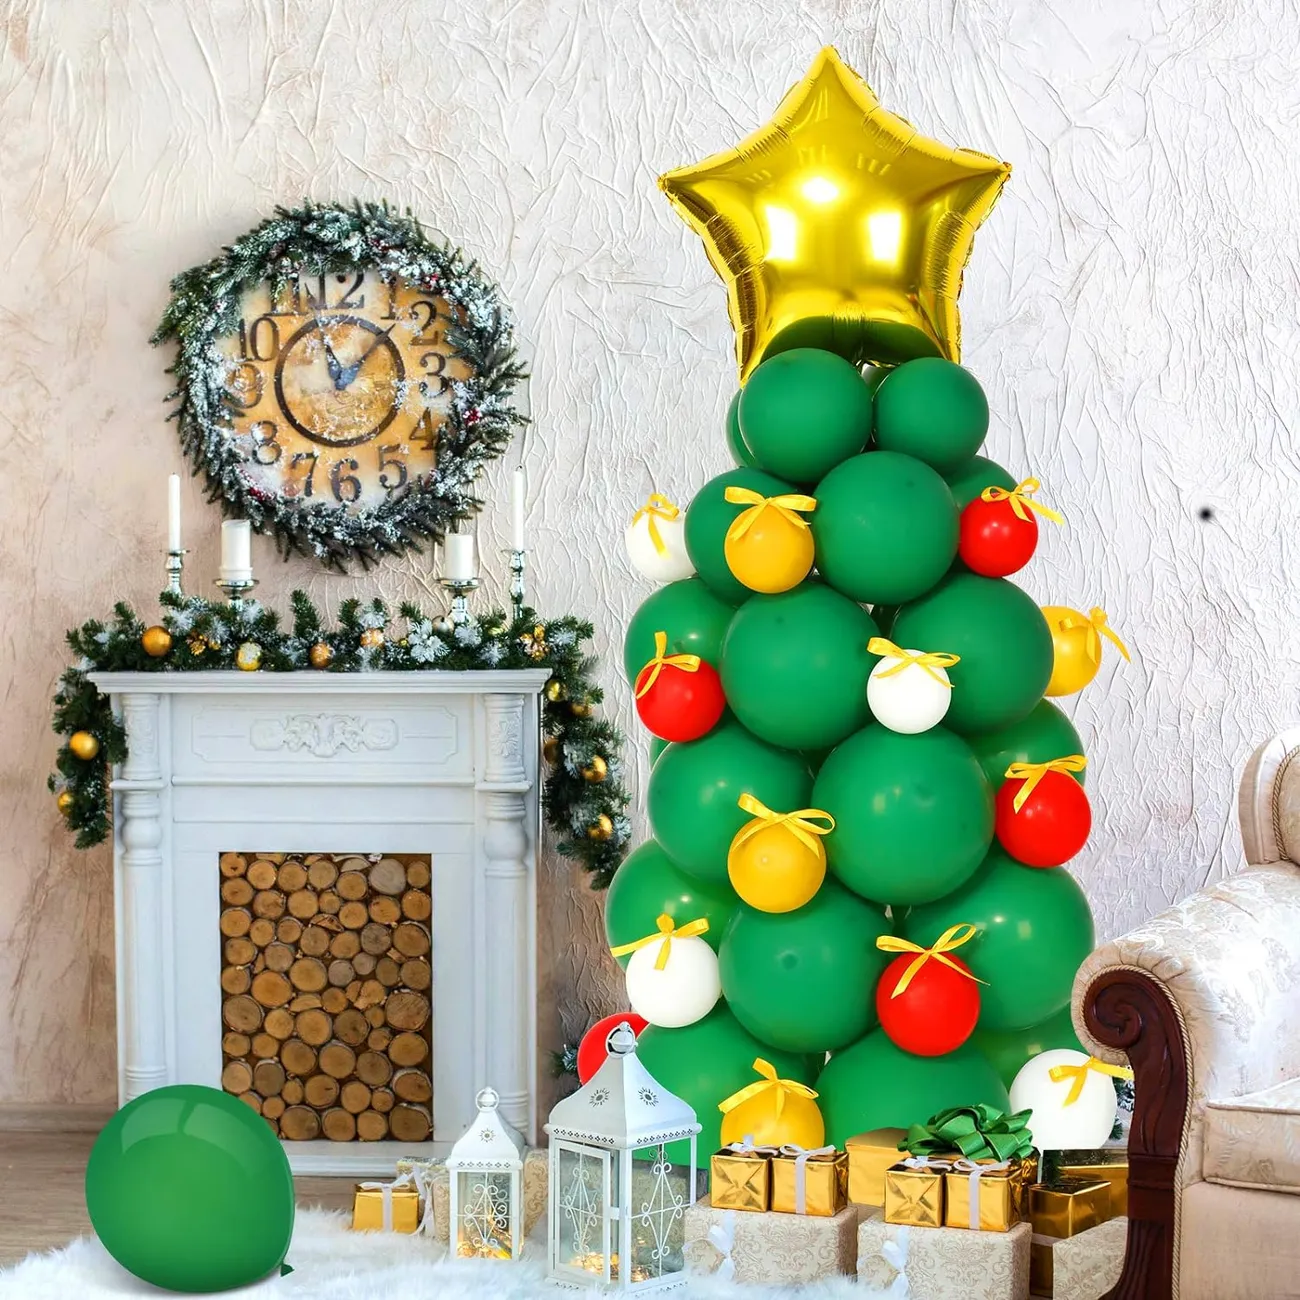 41-Piece látex árvore de Natal balão decoração conjunto para decoração de festa multicor big image 1